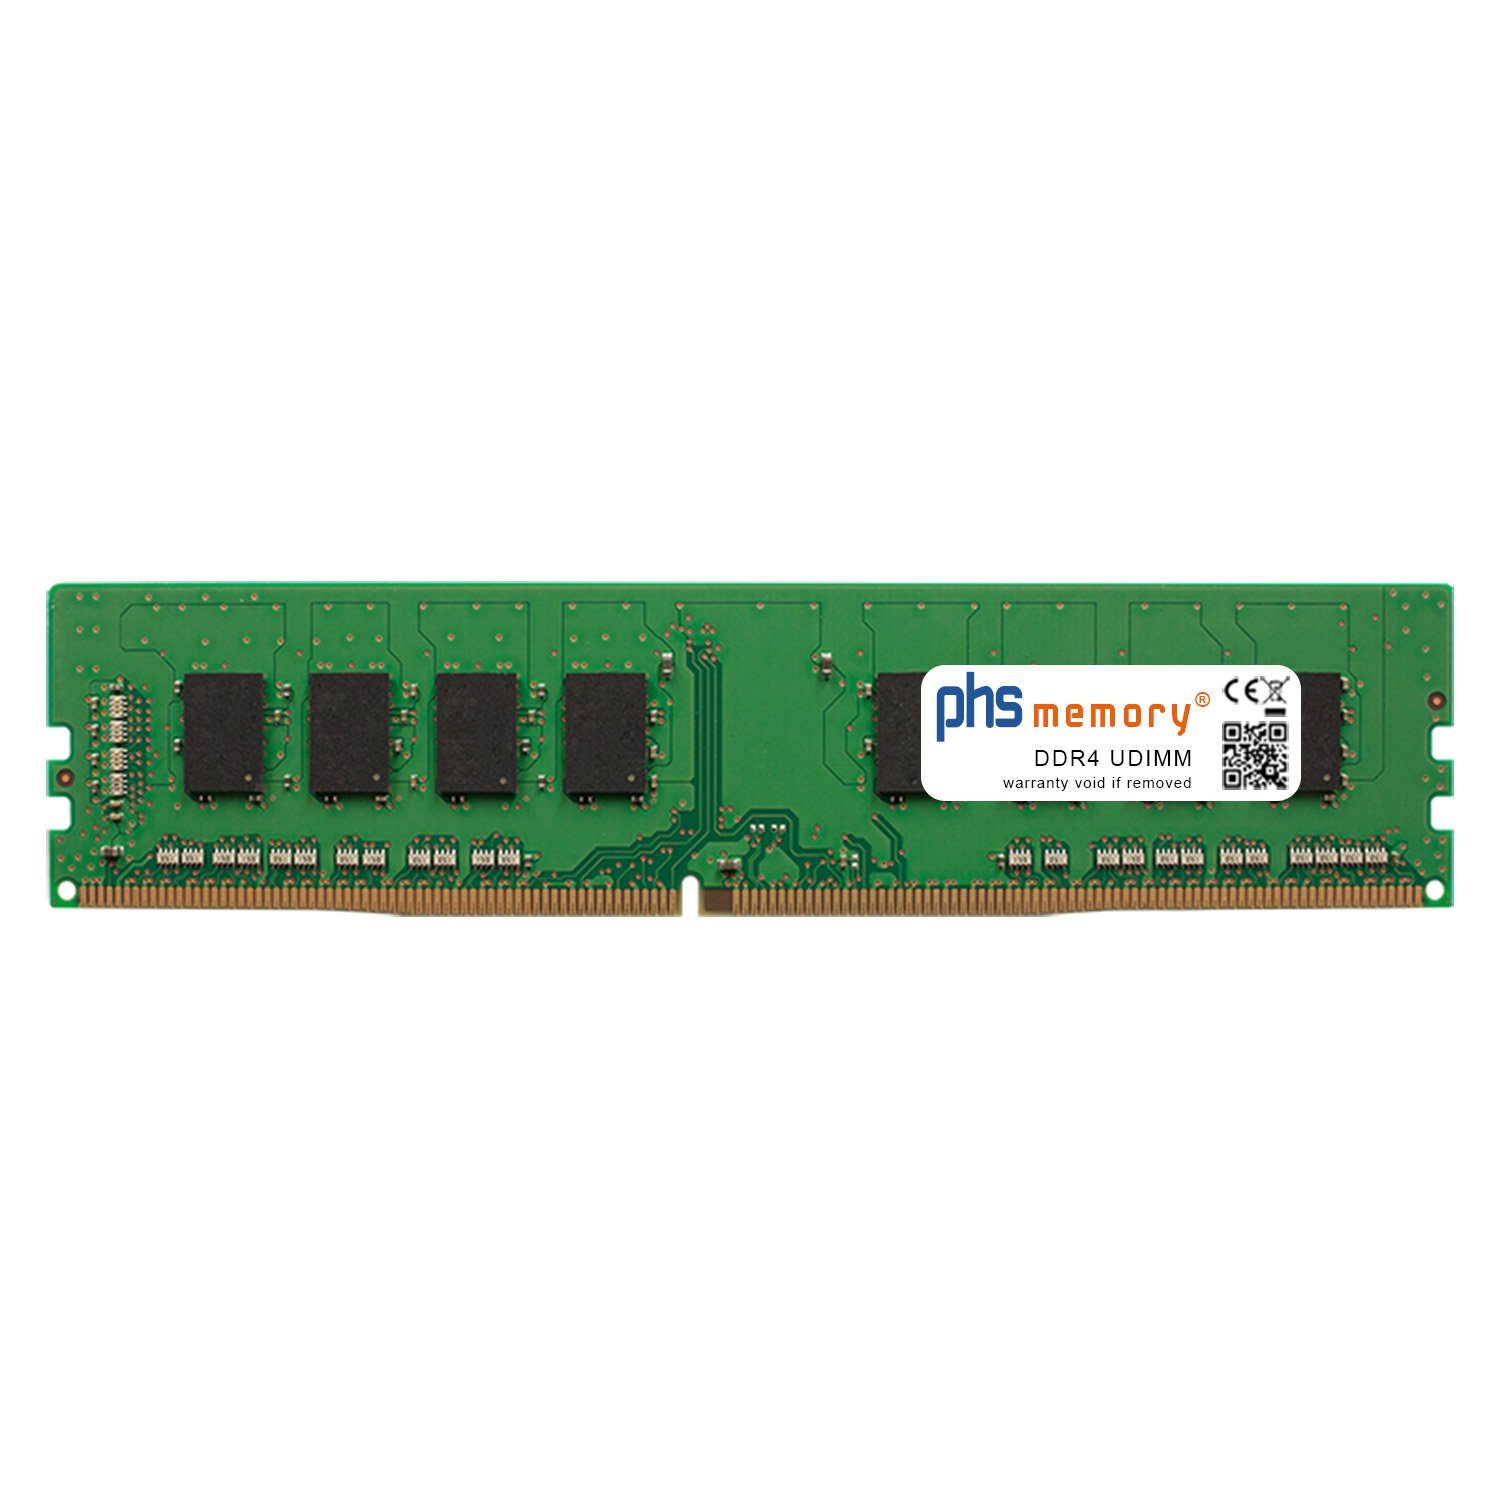 PHS-memory RAM für ASRock X370 Taichi Arbeitsspeicher